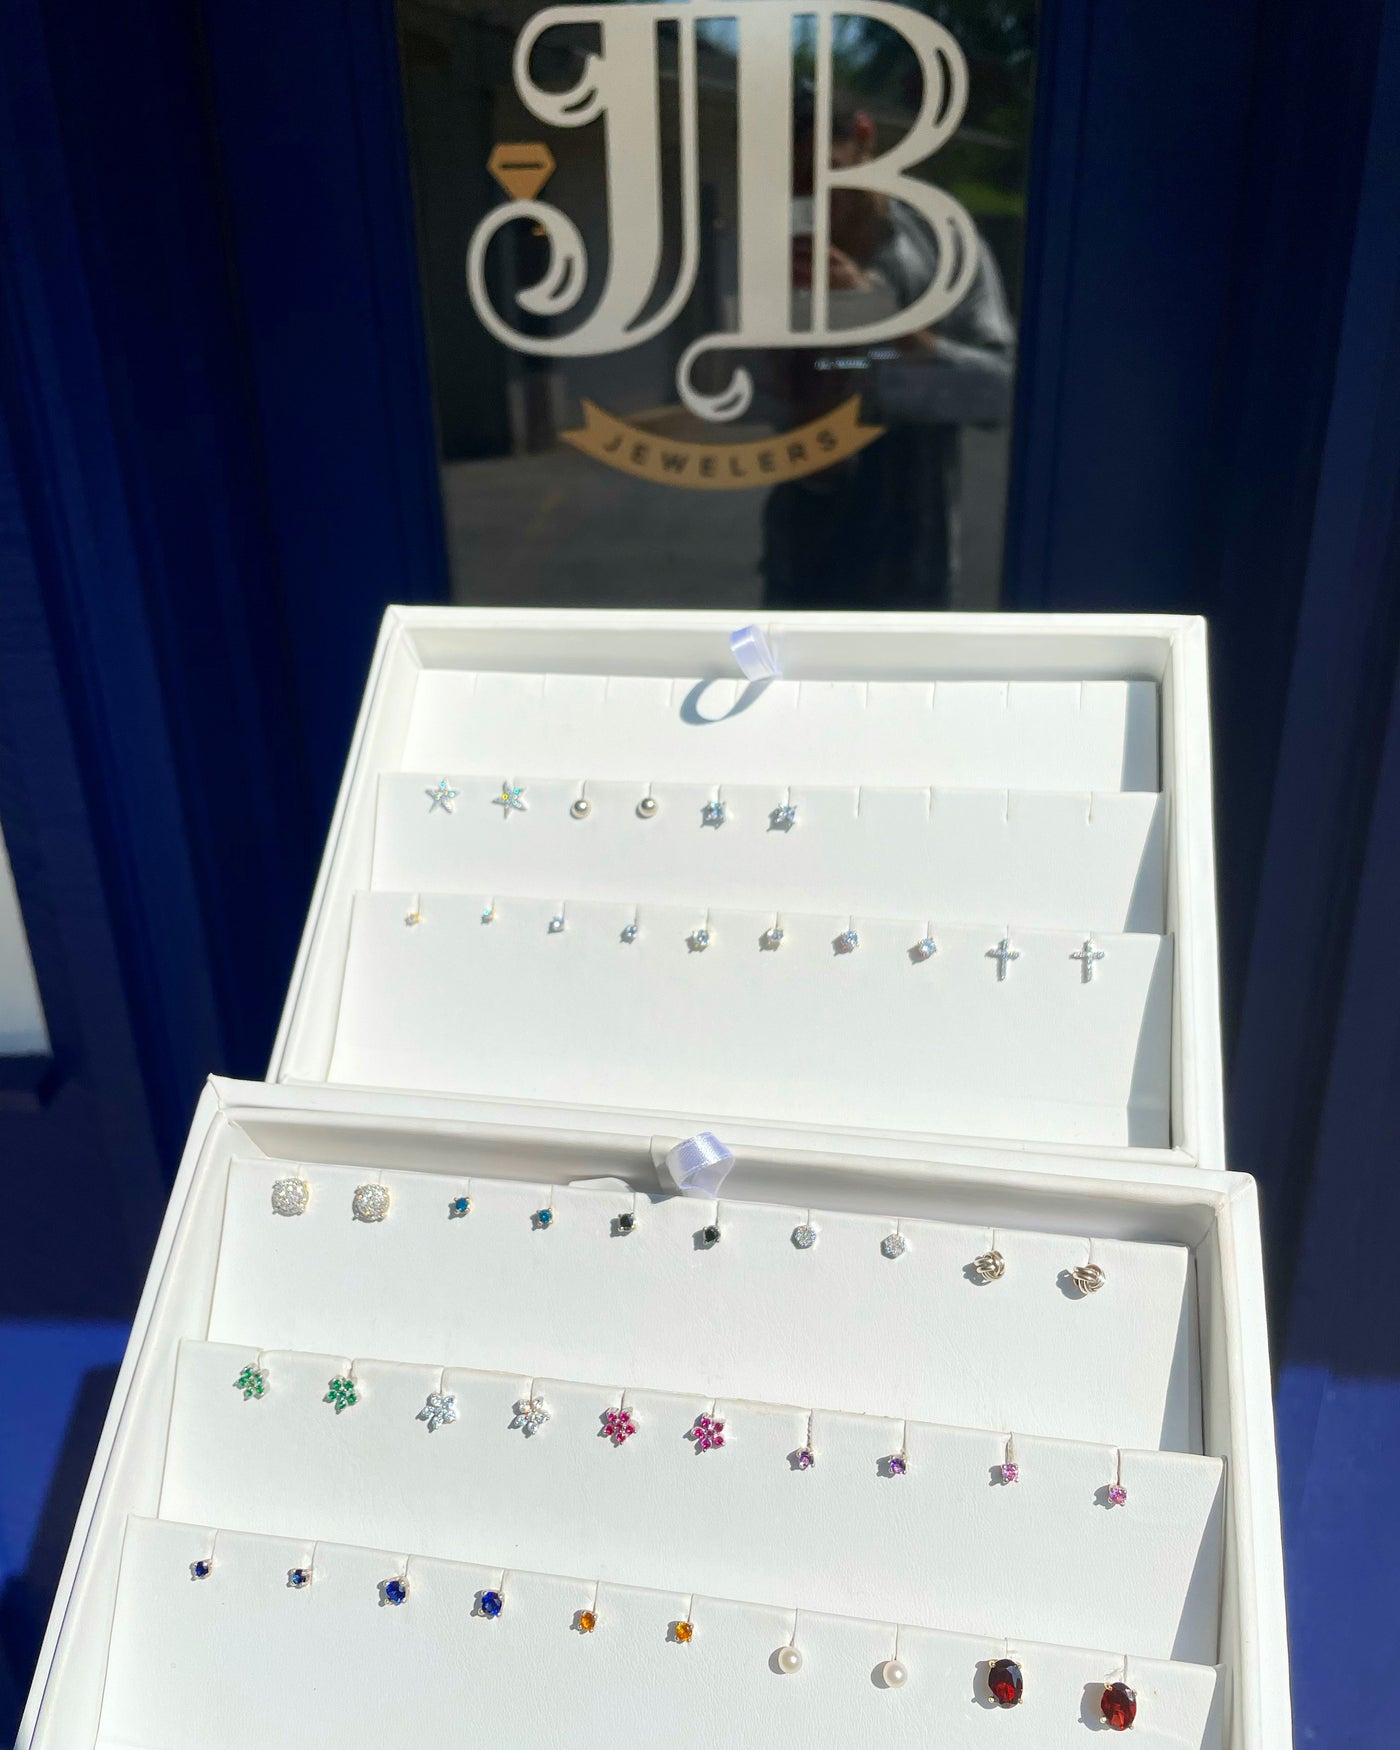 All earrings from JB Jewelers 